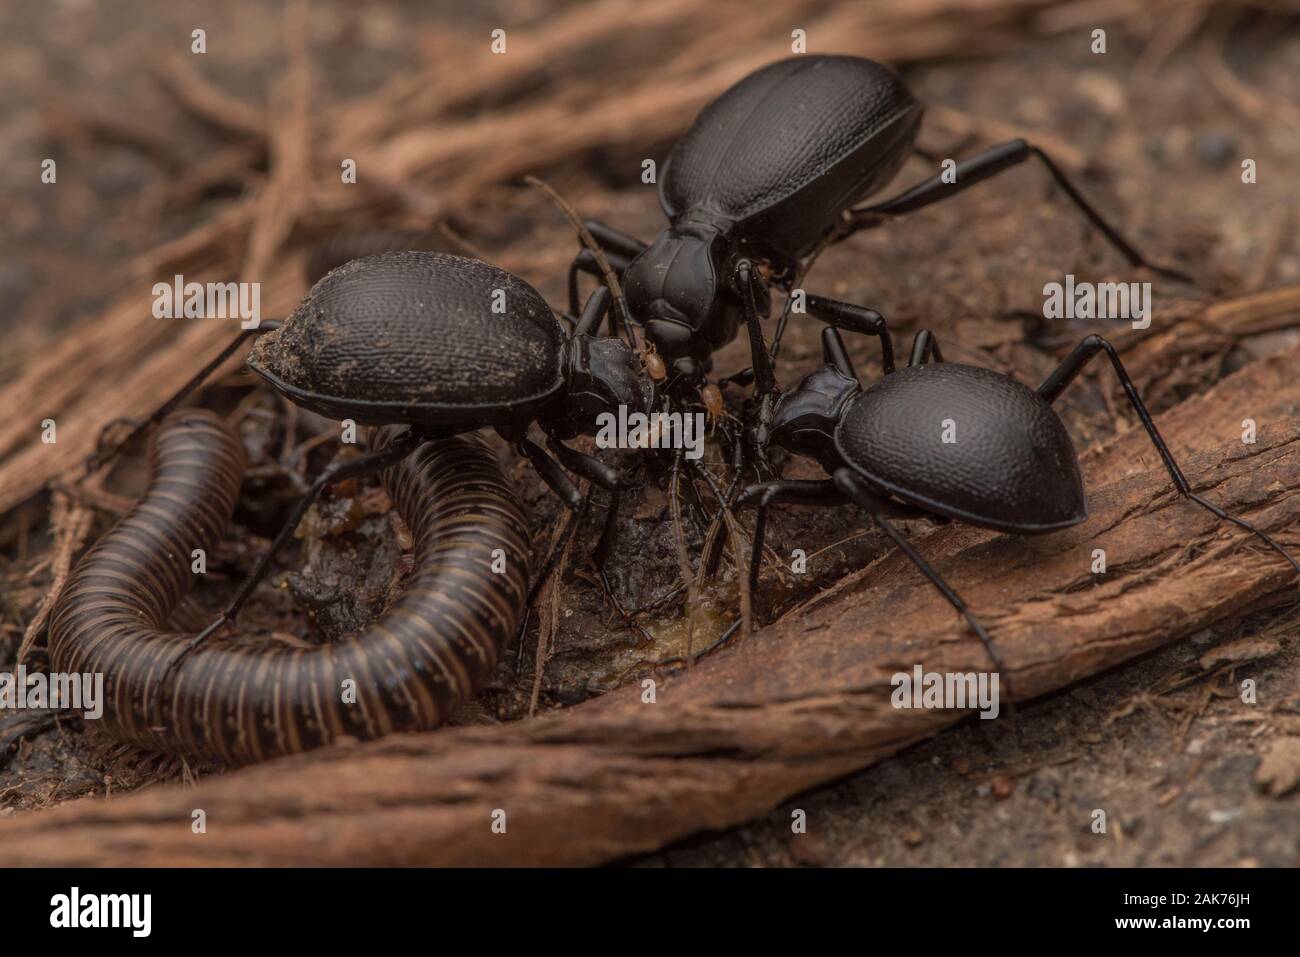 Gruppo di lumaca mangiare coleotteri (Scaphinotus) alimentazione insieme con un millepiedi e acari che sono accorsi oltre i coleotteri. Una specie endemica di CA. Foto Stock